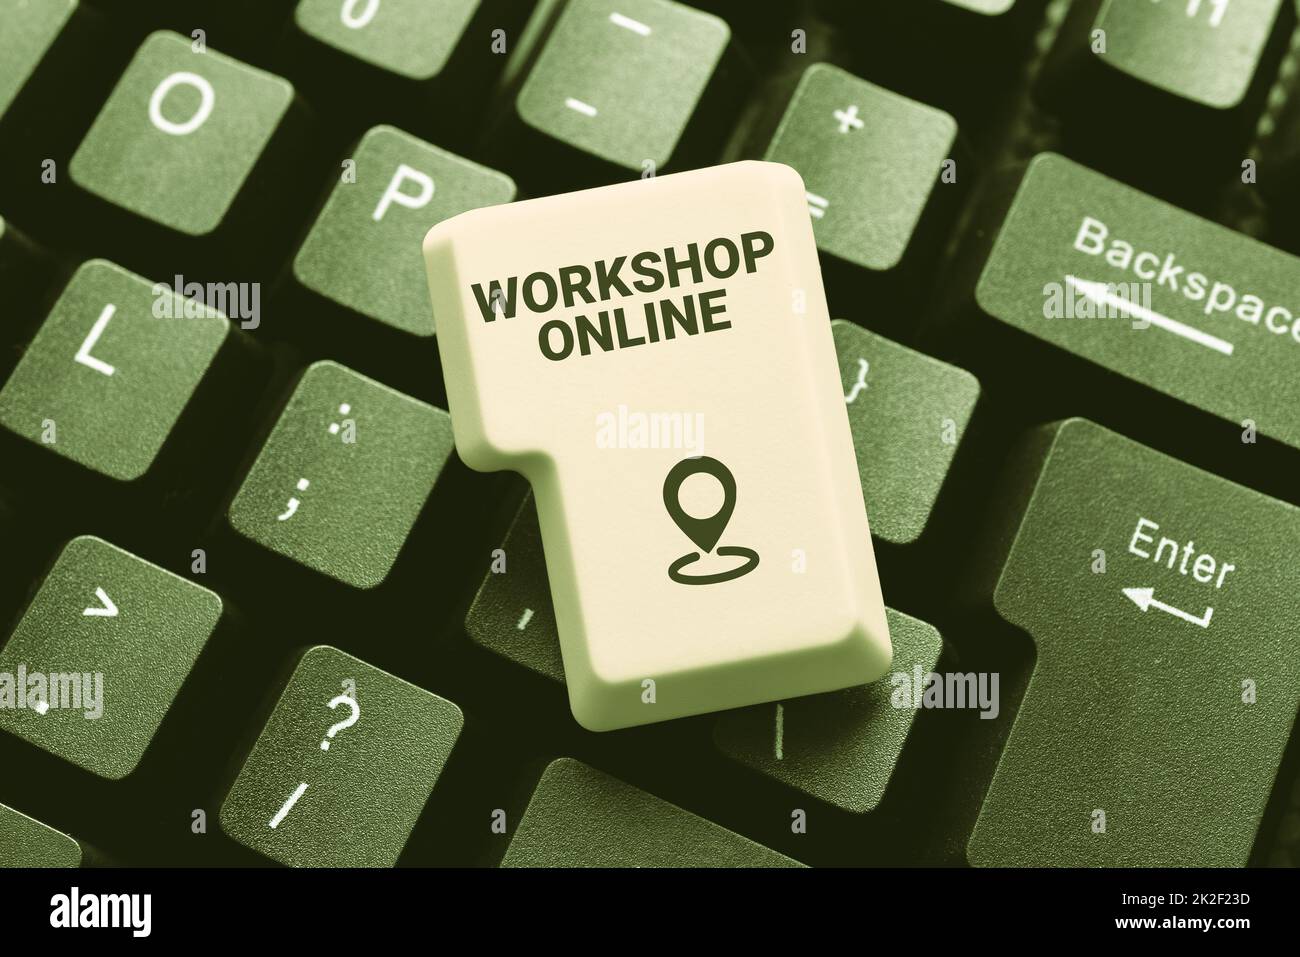 Konzeptionelle Darstellung Workshop Online. Wort geschrieben auf Workshop Online Erstellen von Dateneintrags- und Tippjobs, Posten auf Online Selling Website Stockfoto